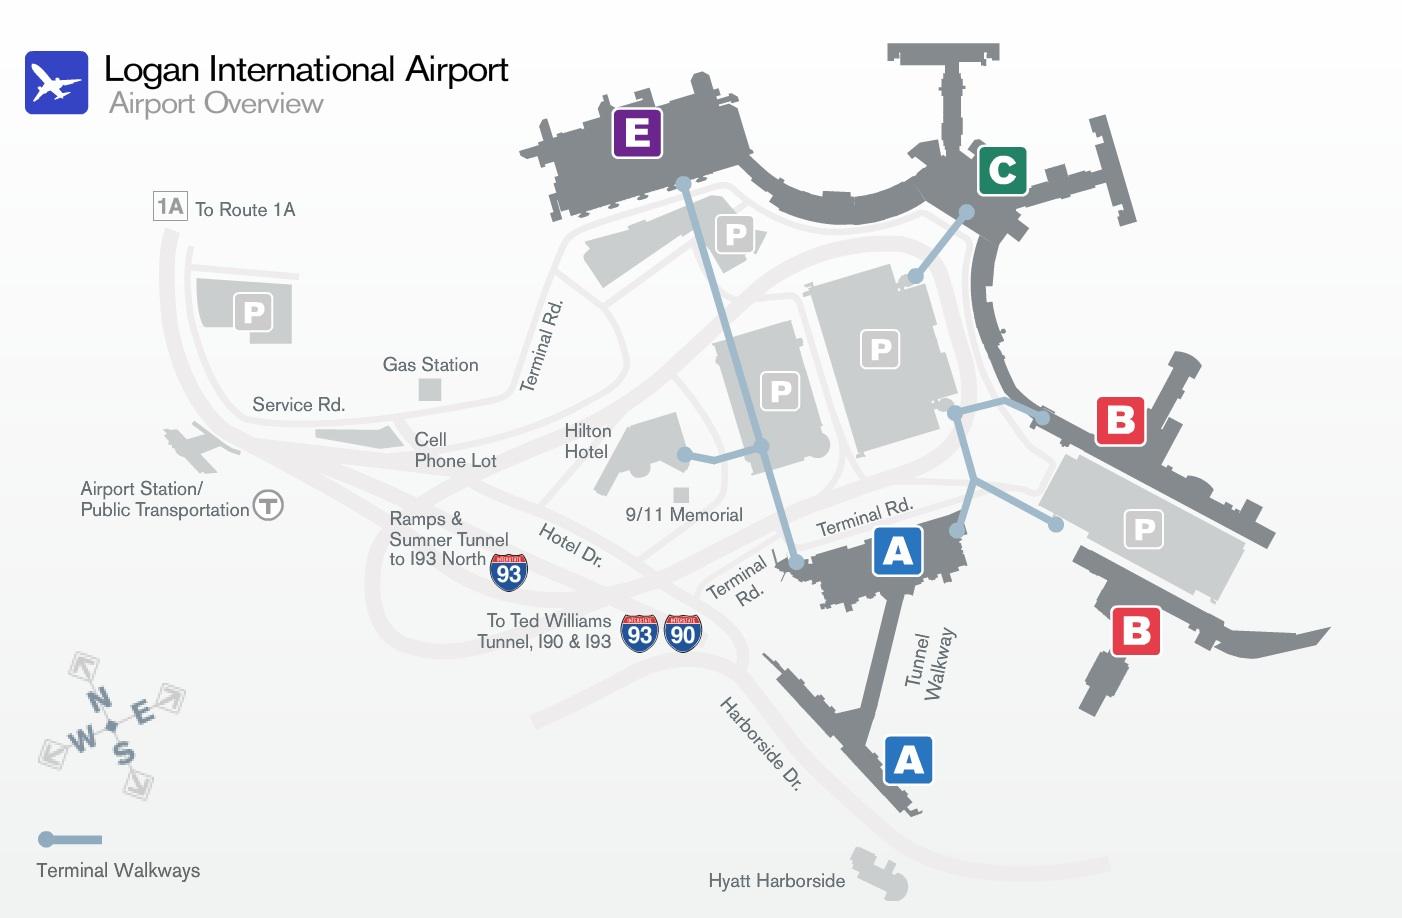 Logan airport terminal b map - Map of Logan airport terminal b (United ...